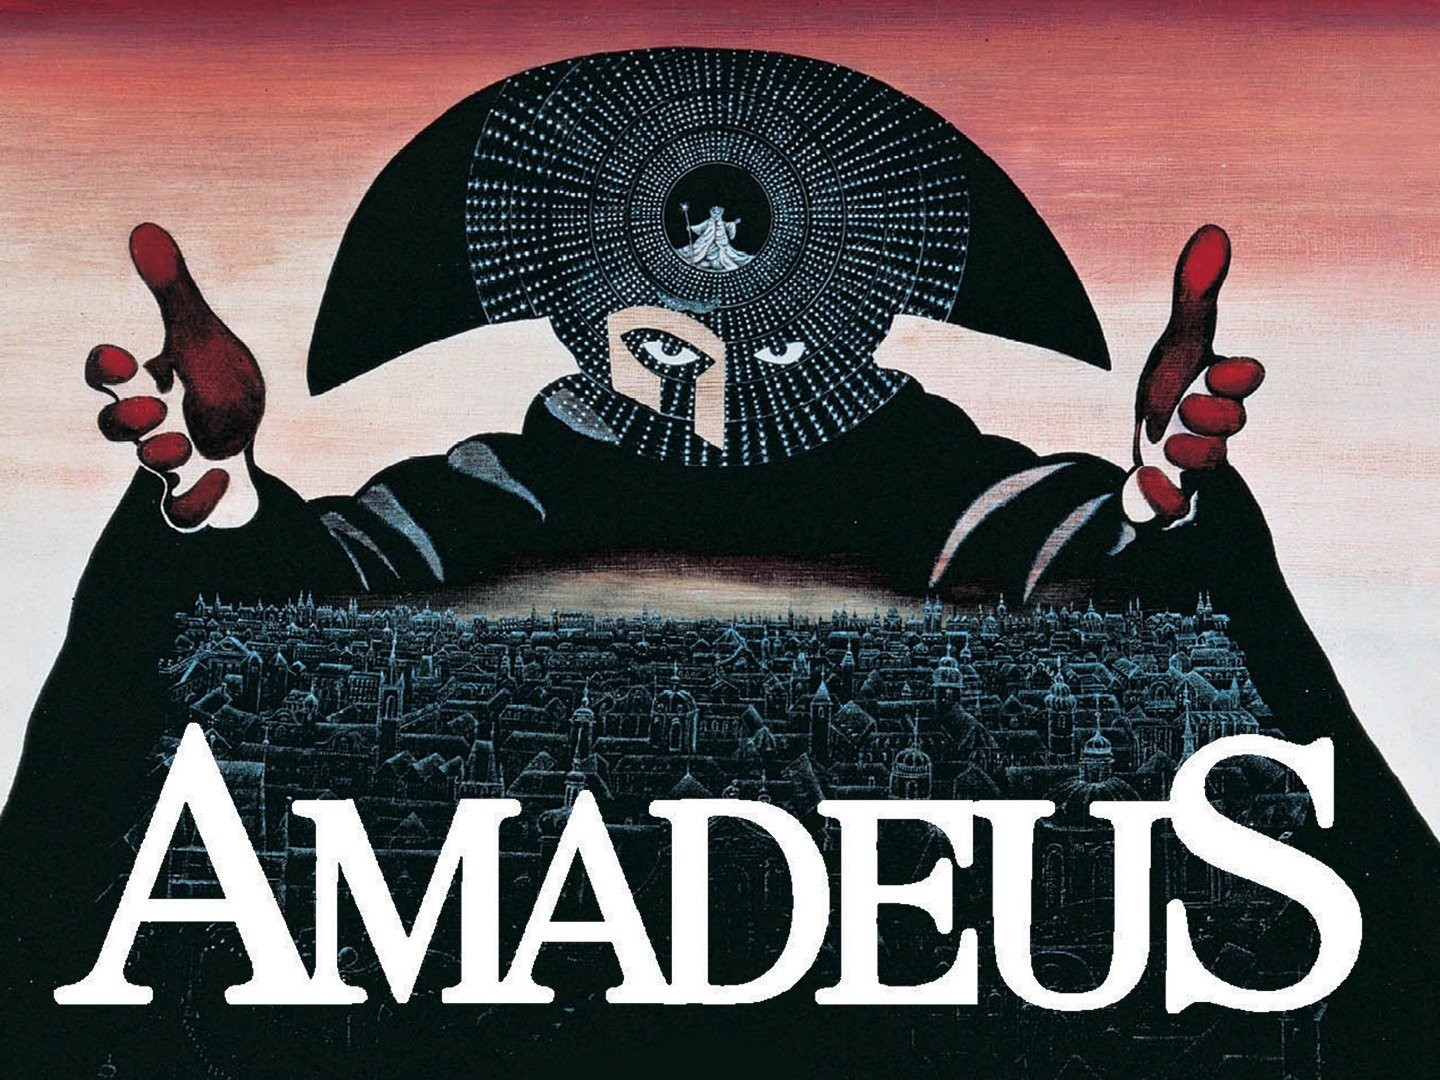 Amadeus - 1984 movie version poster image